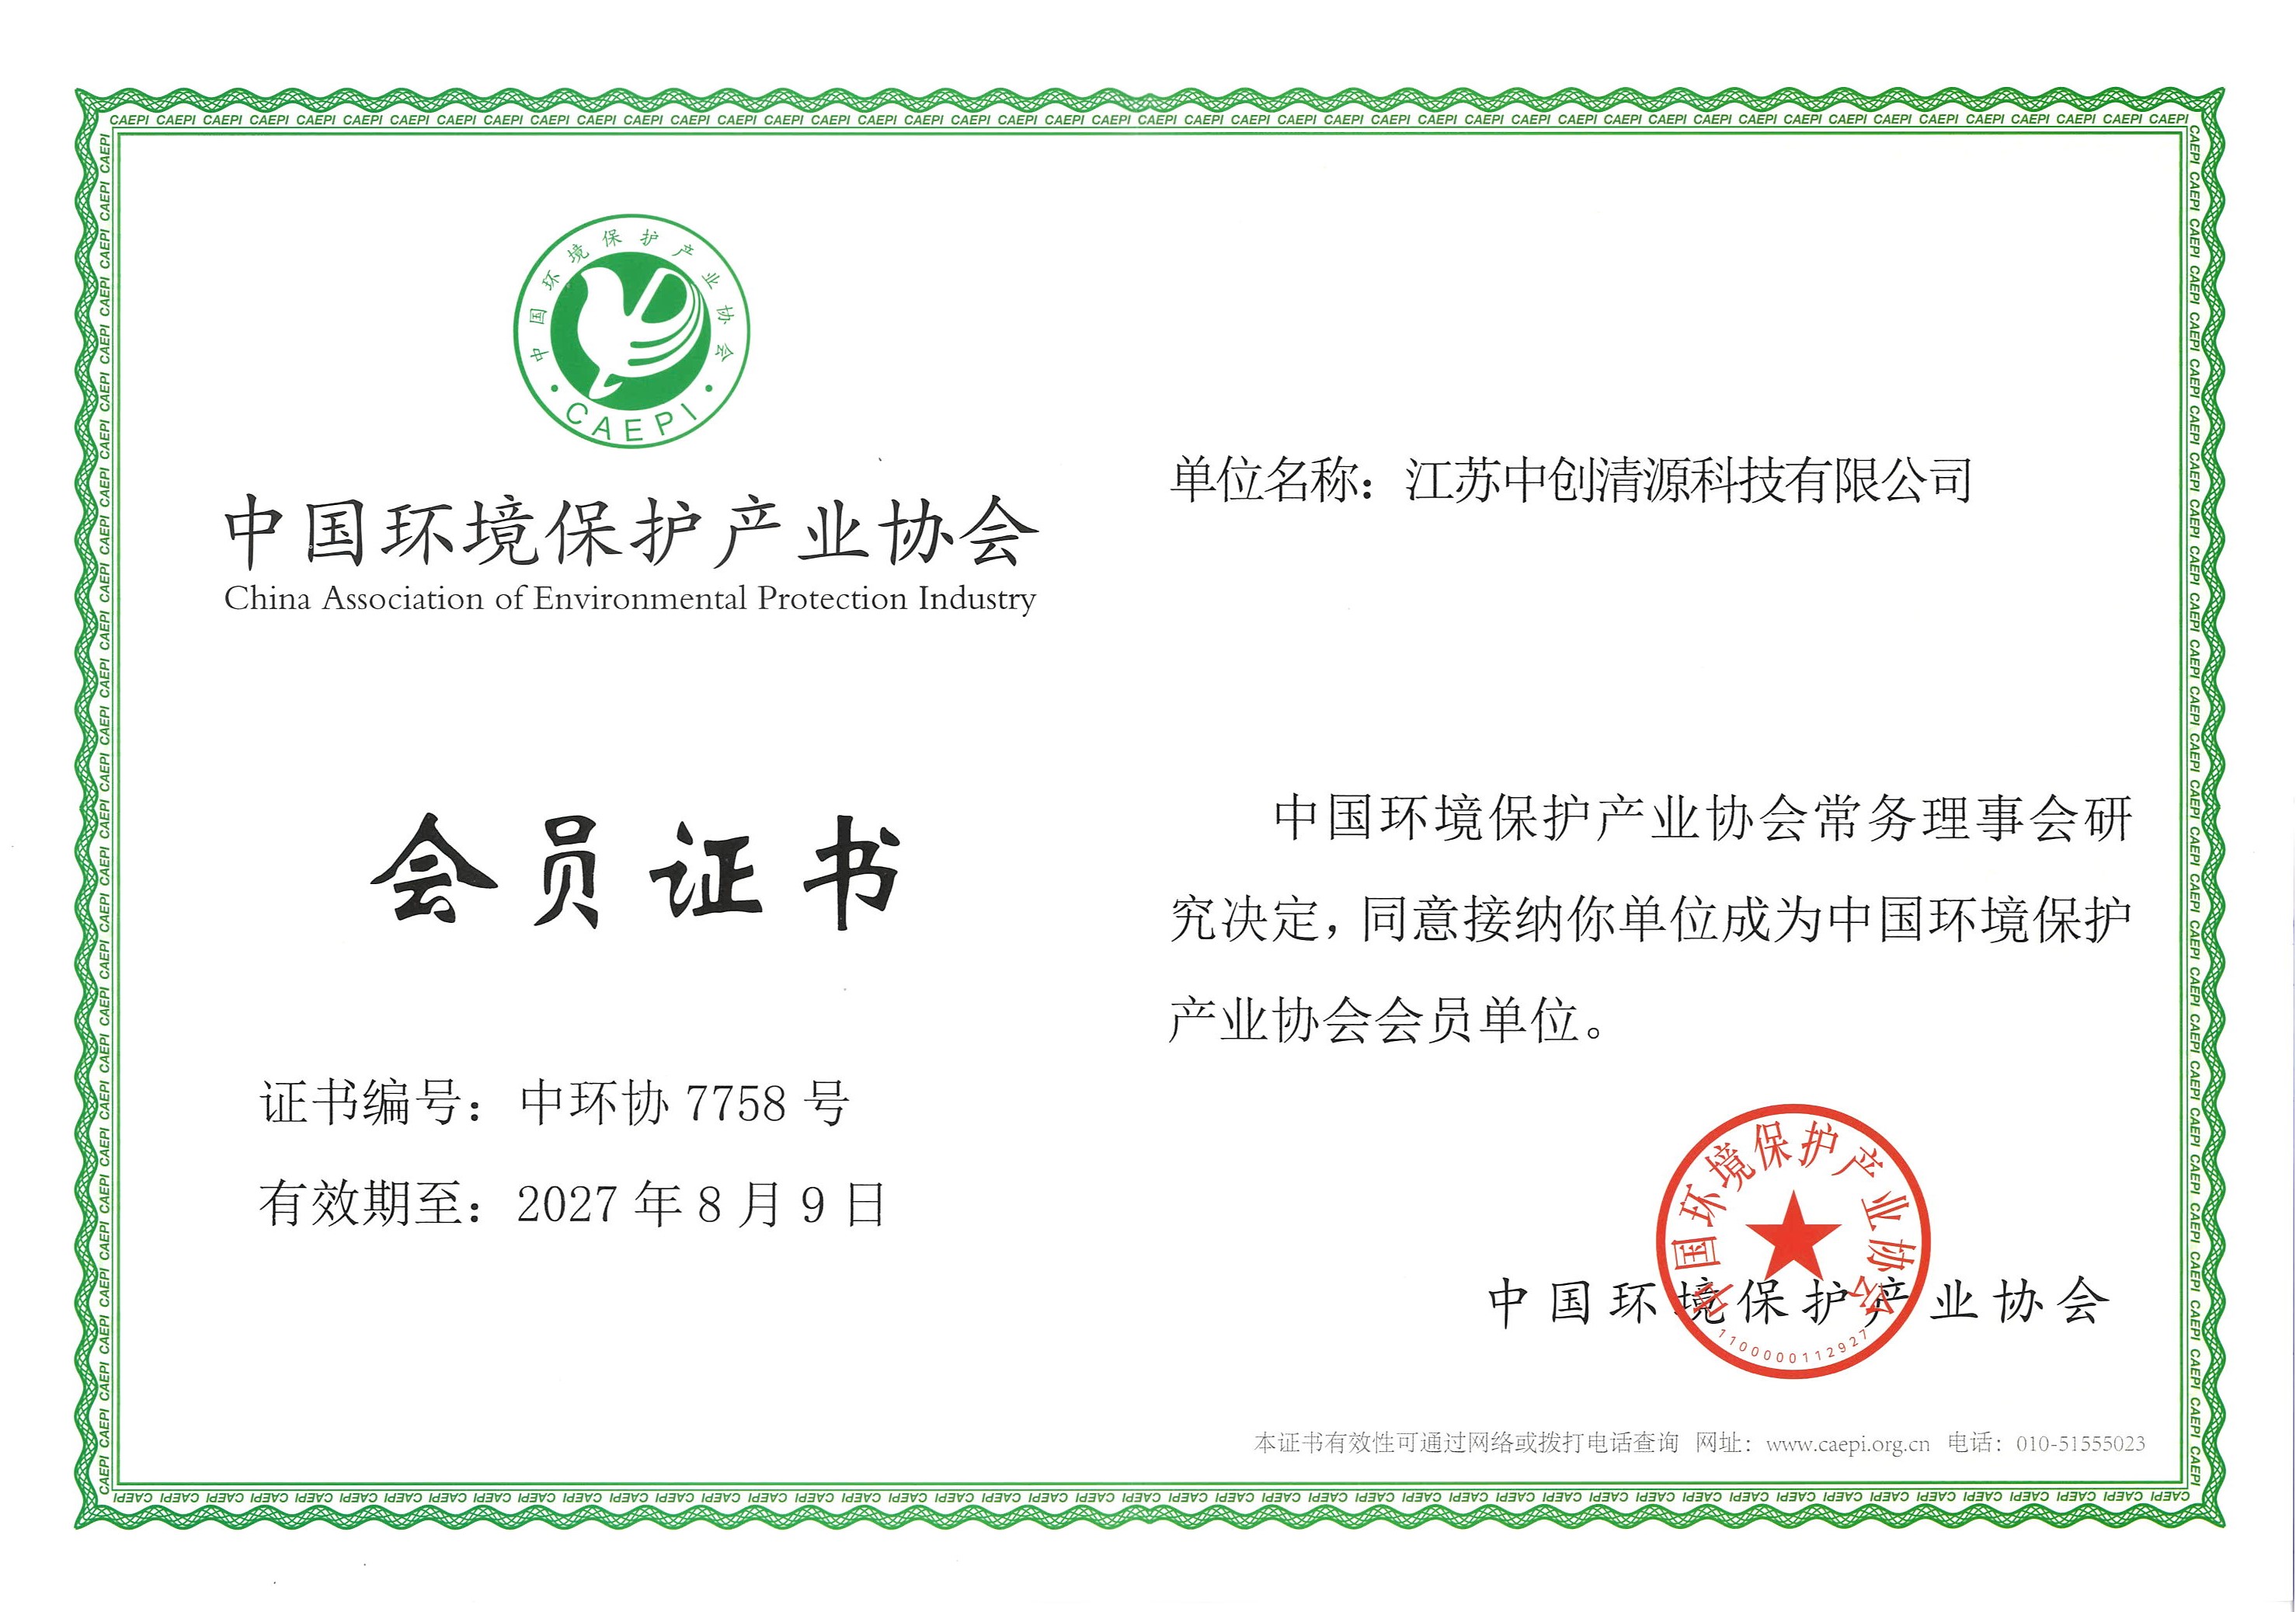 中國環境保護產業協會會員單位